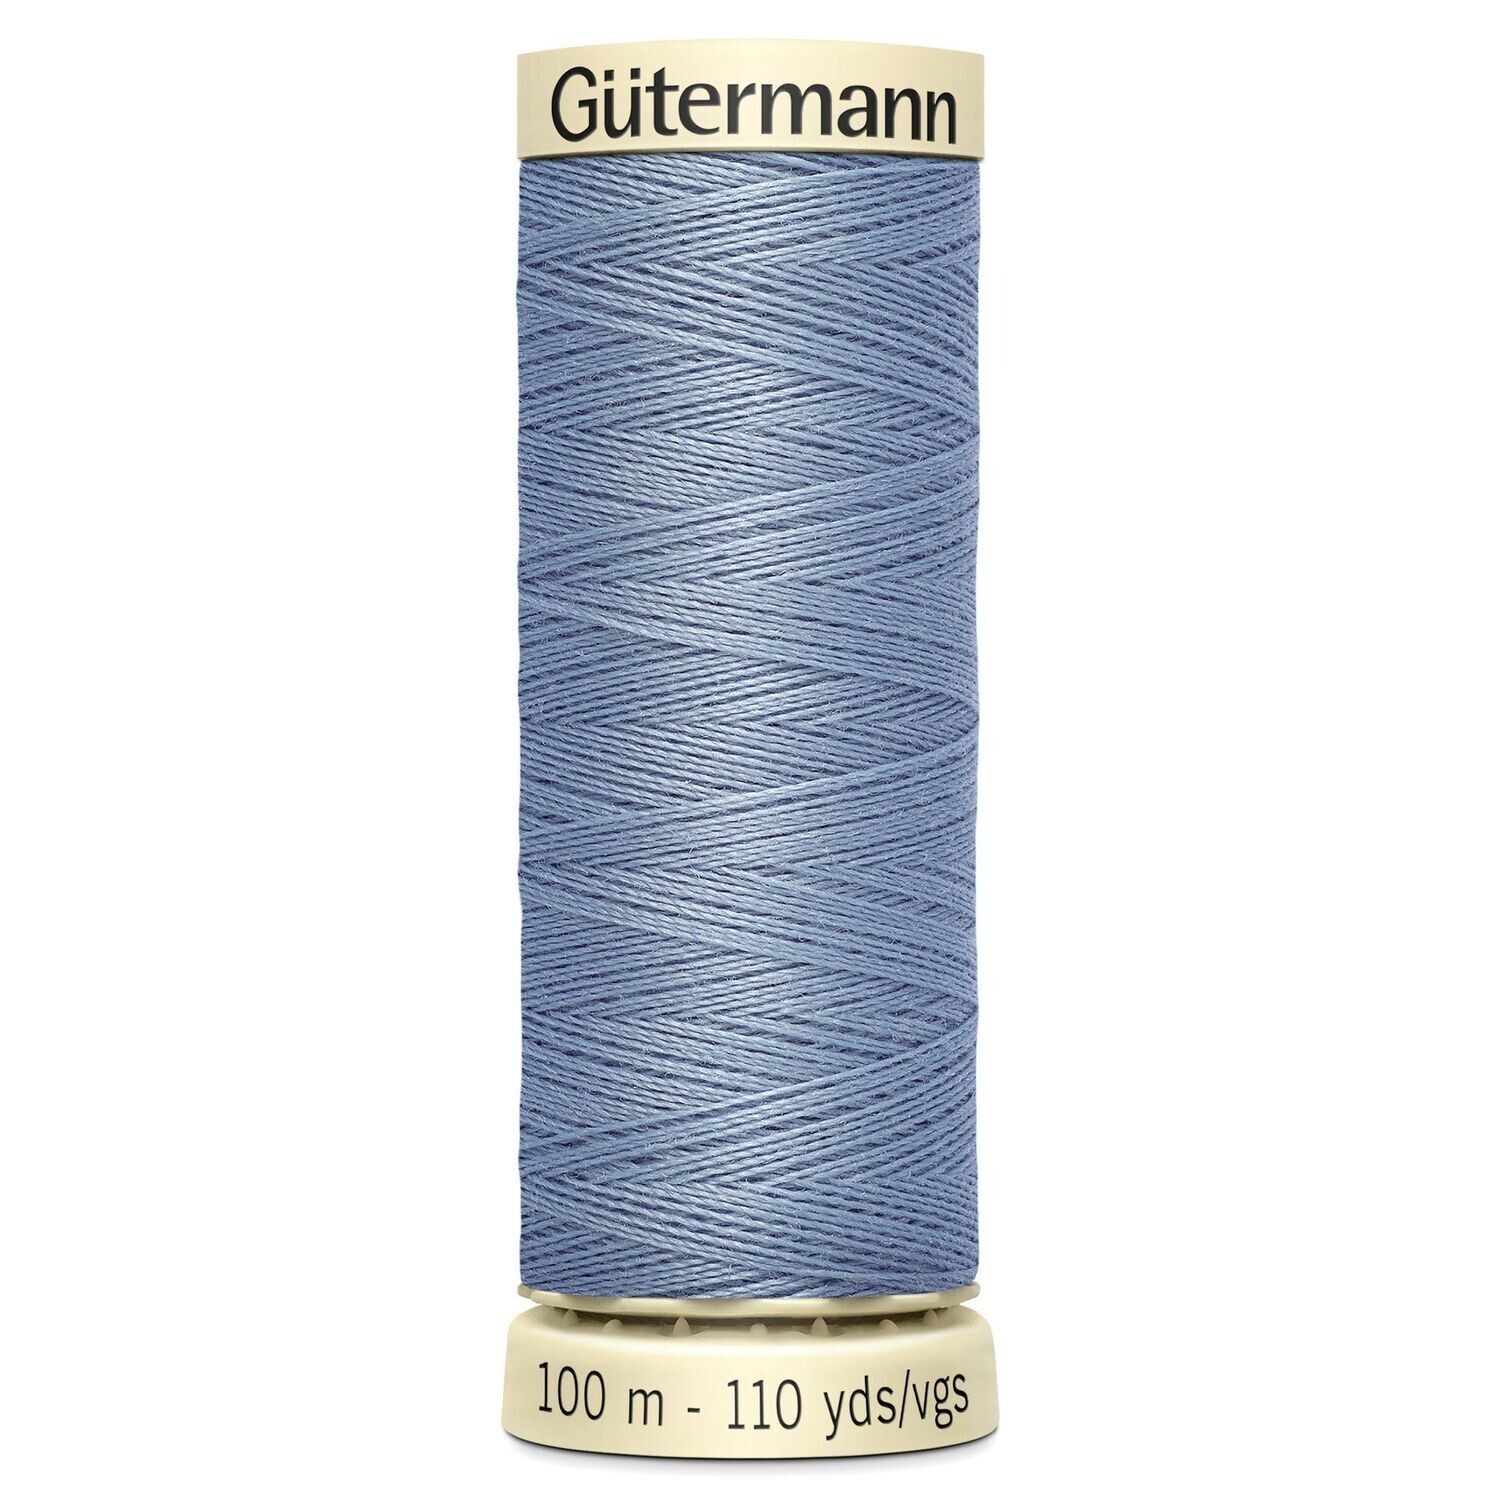 Sew All Thread 100m - Gutermann - Colour 064